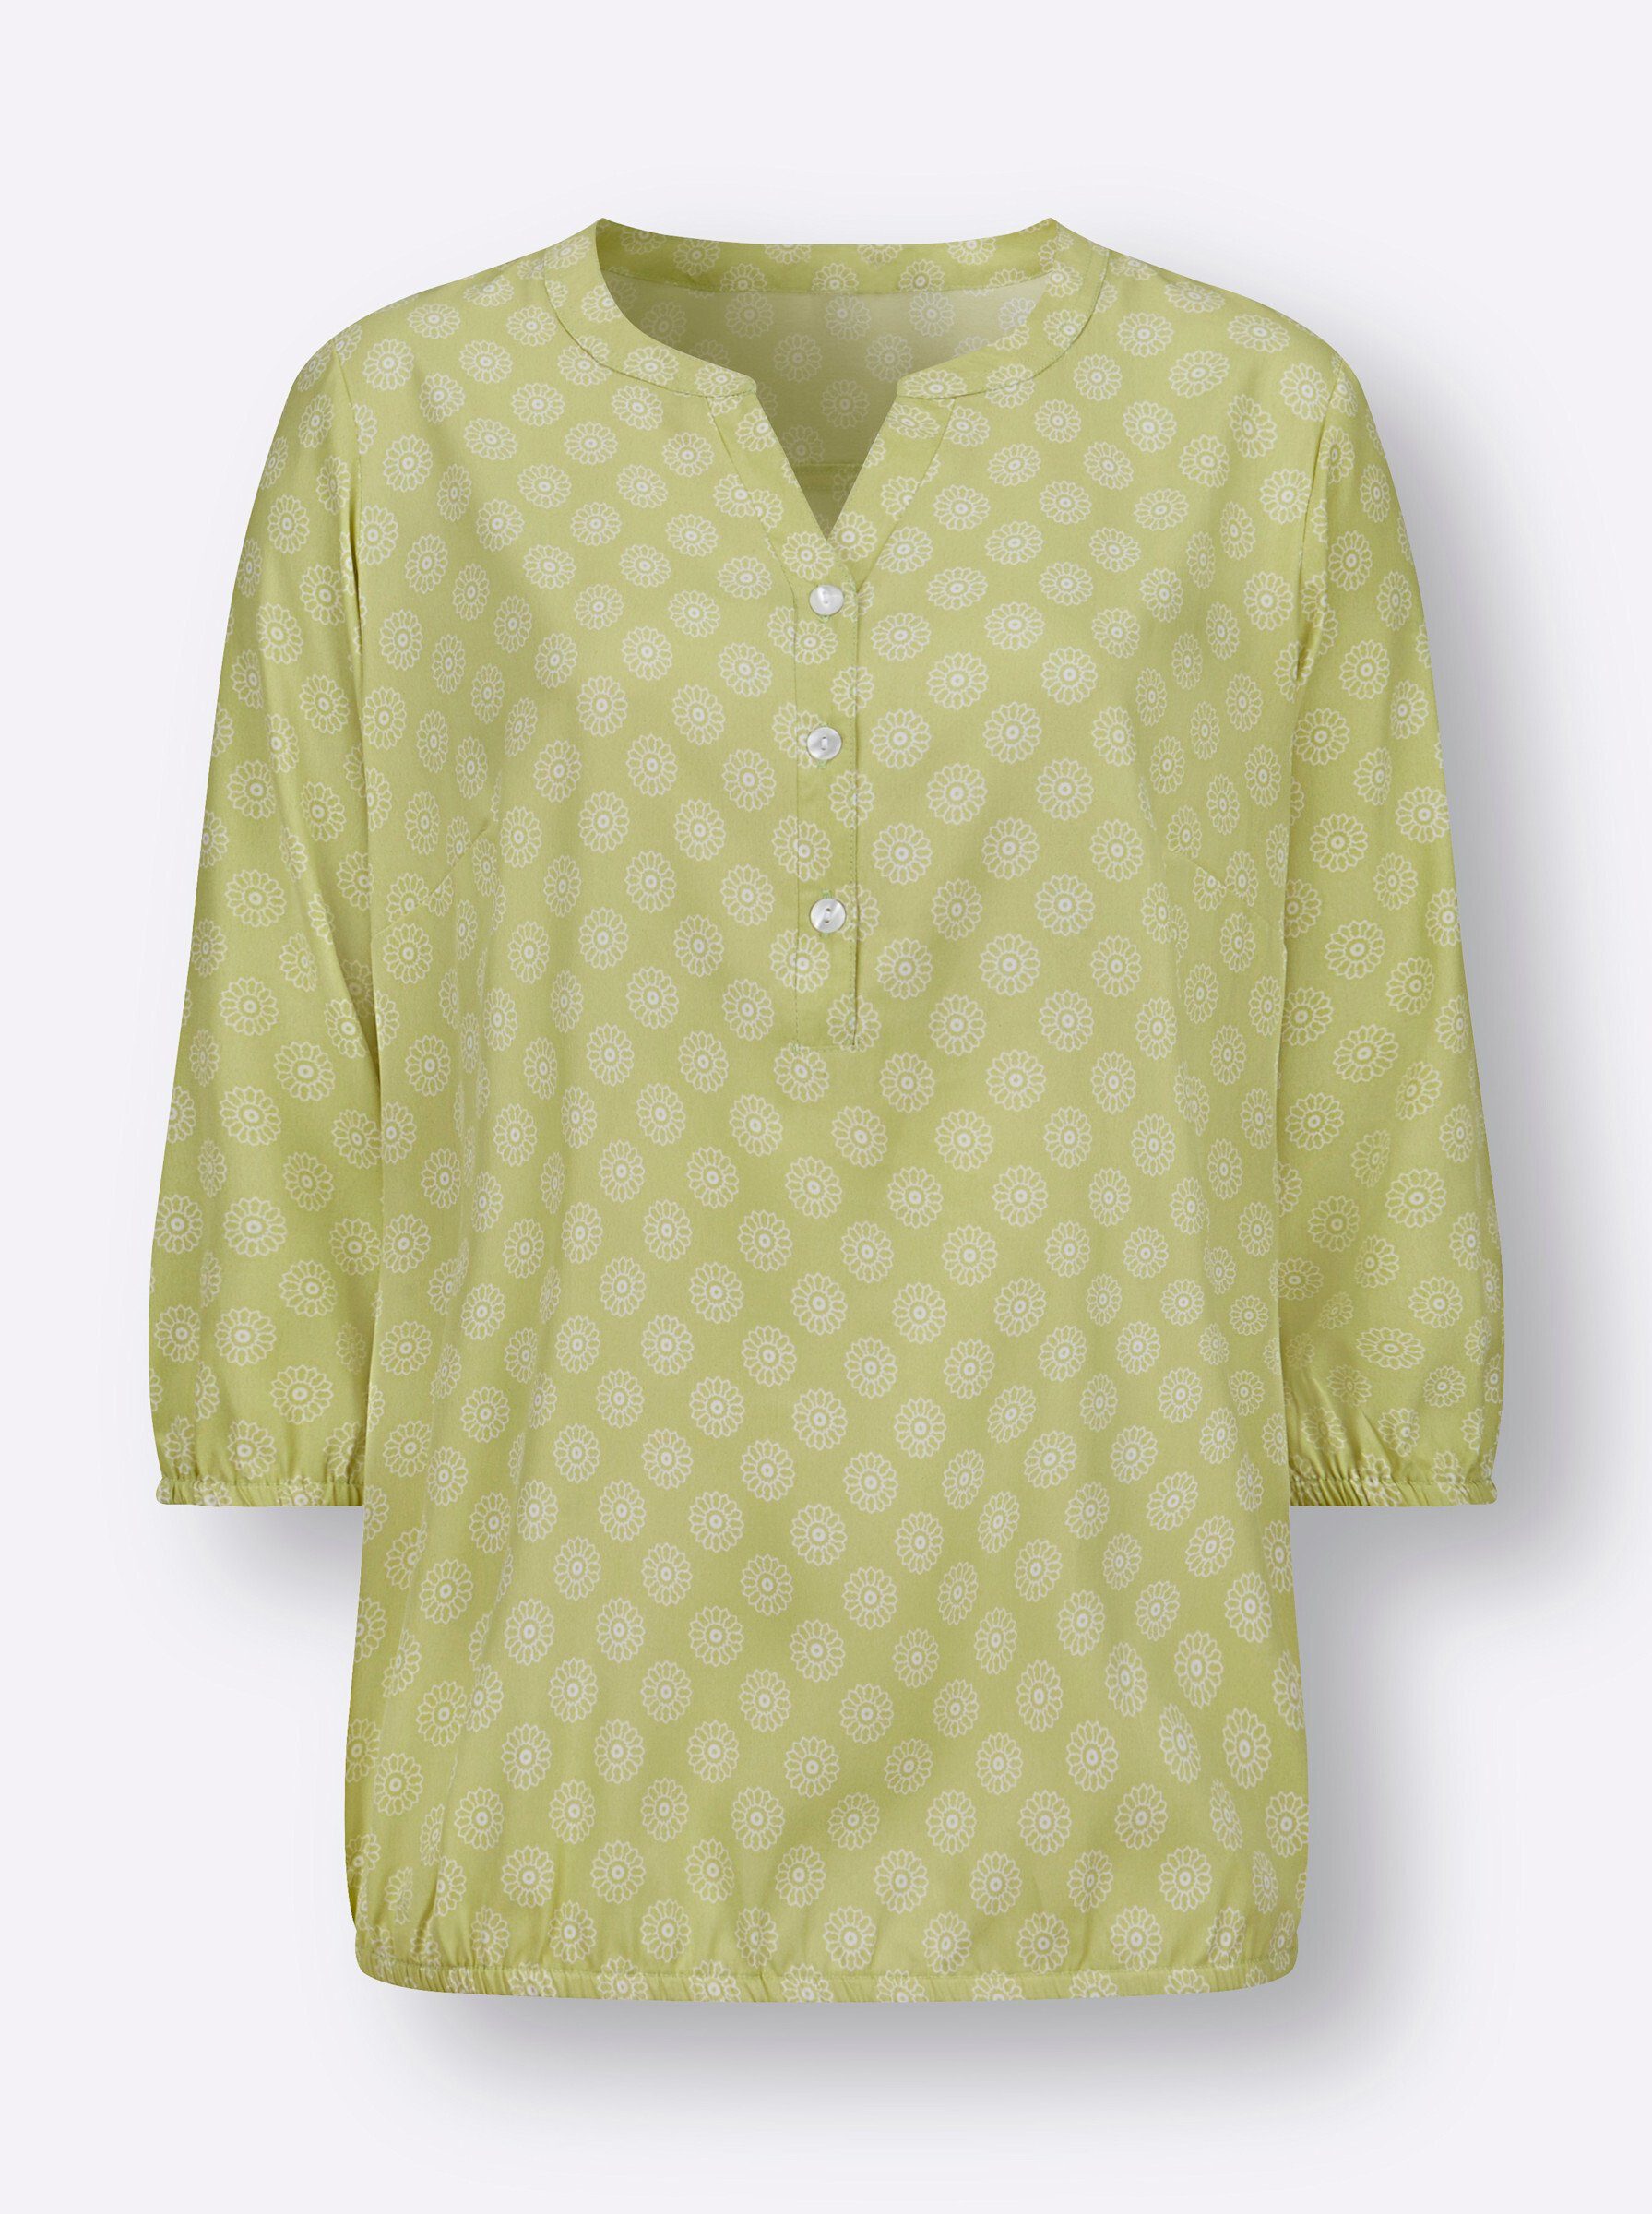 Sieh Klassische lindgrün-ecru-bedruckt Bluse an!